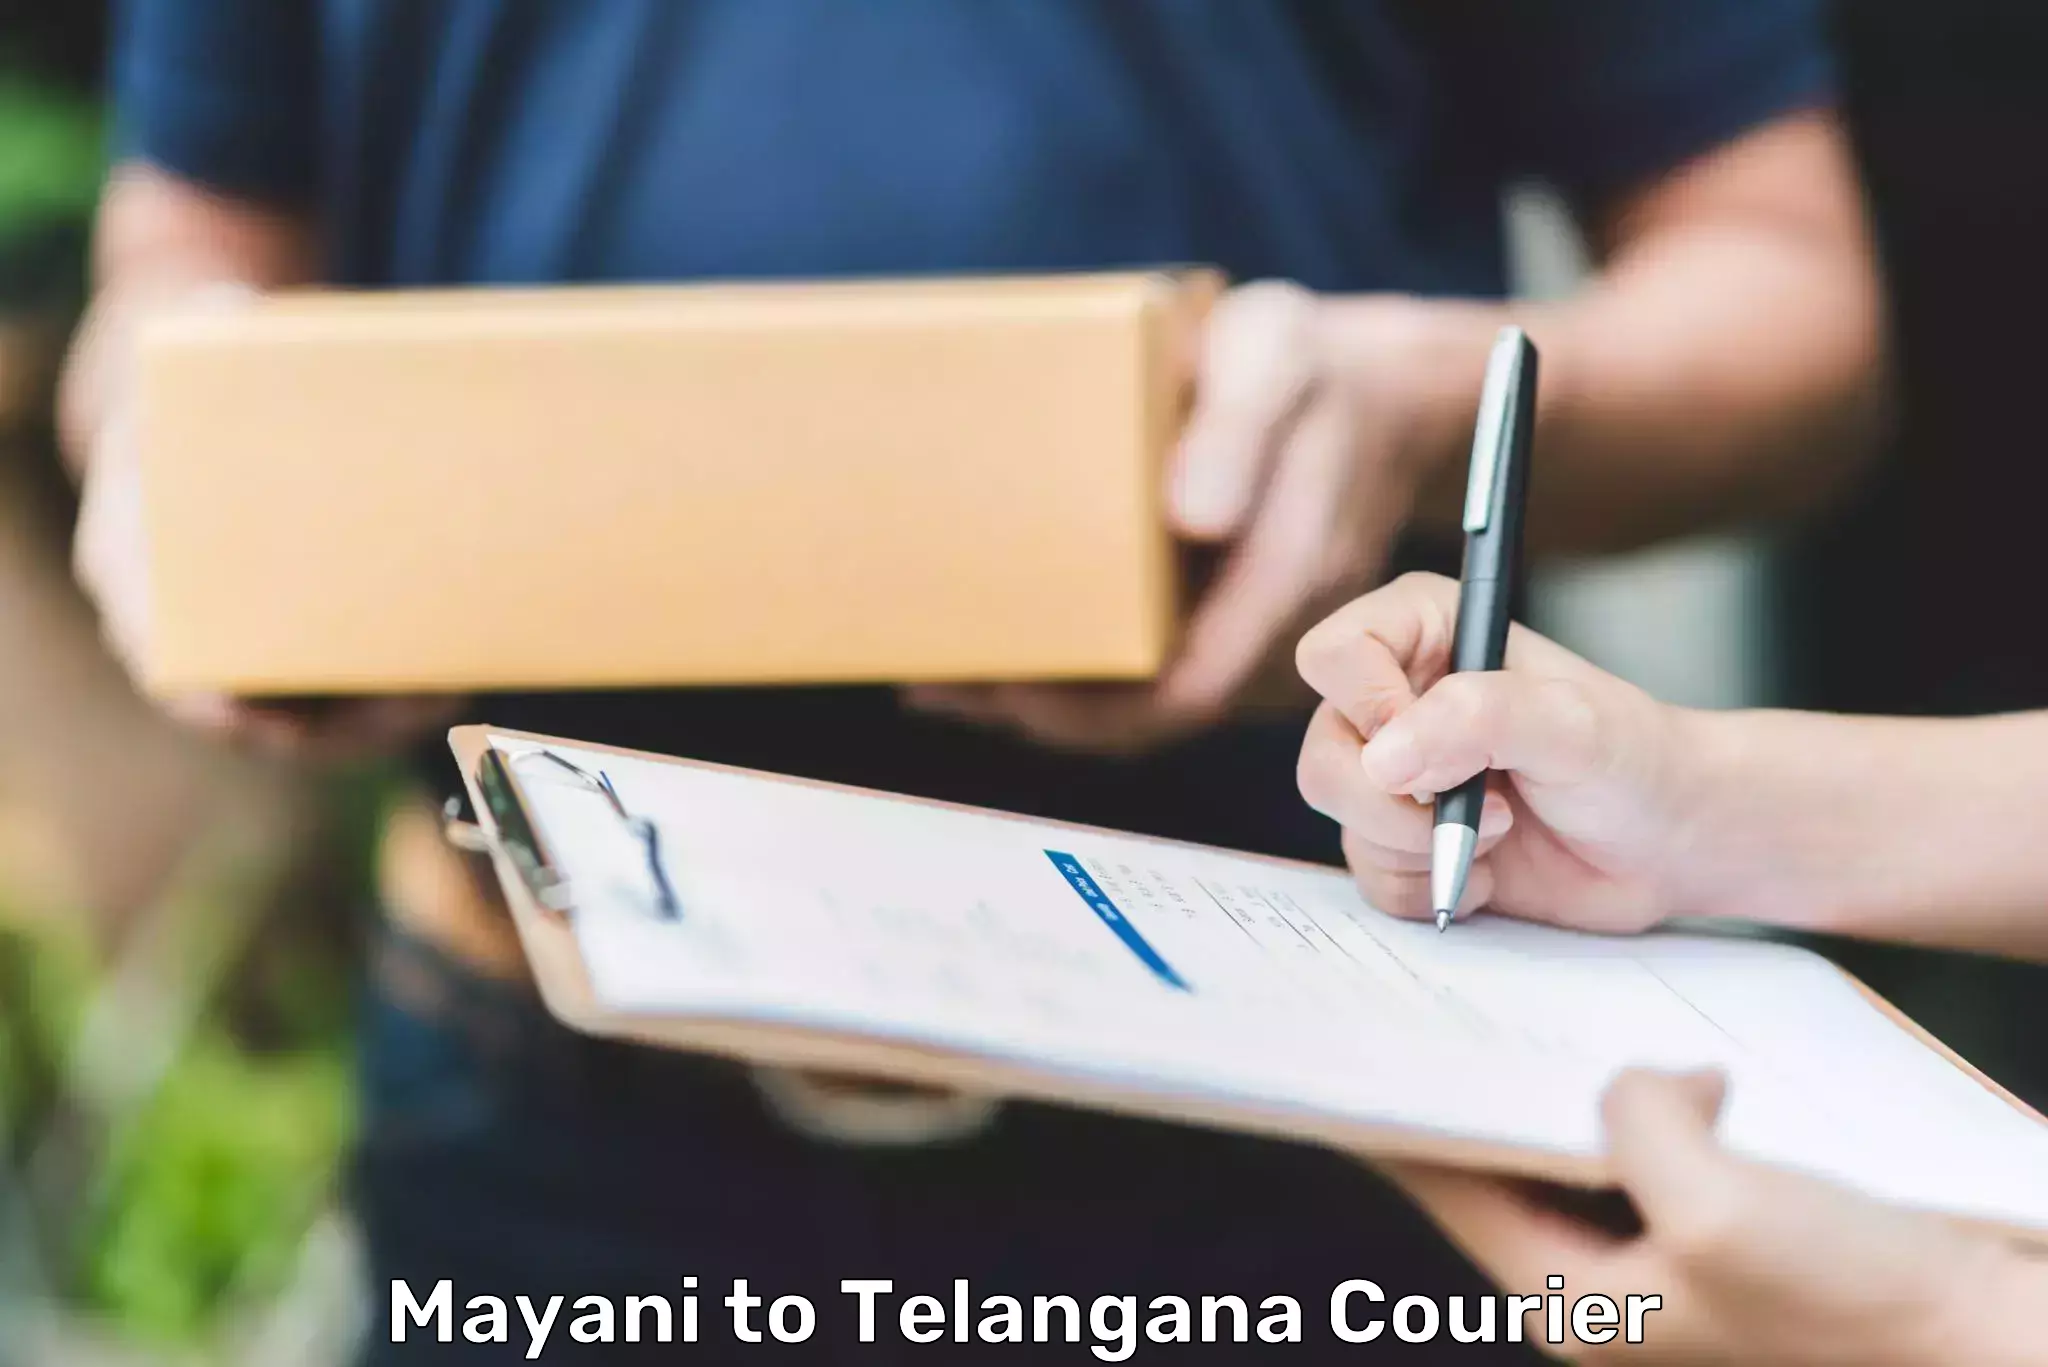 Cash on delivery service Mayani to Hanamkonda